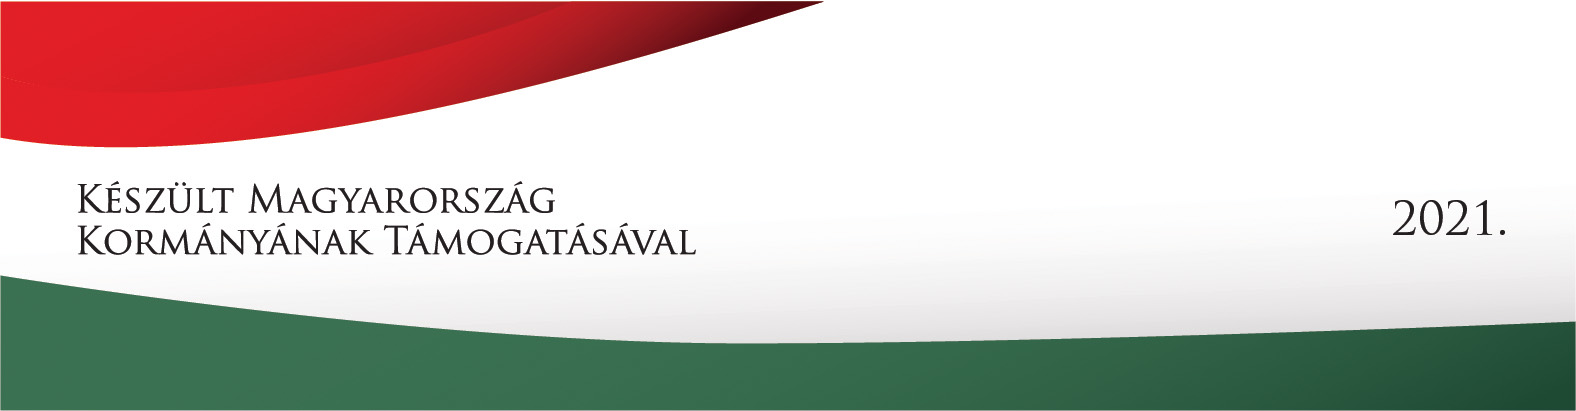 Készült Magyarország Kormányának támogatásával 2021